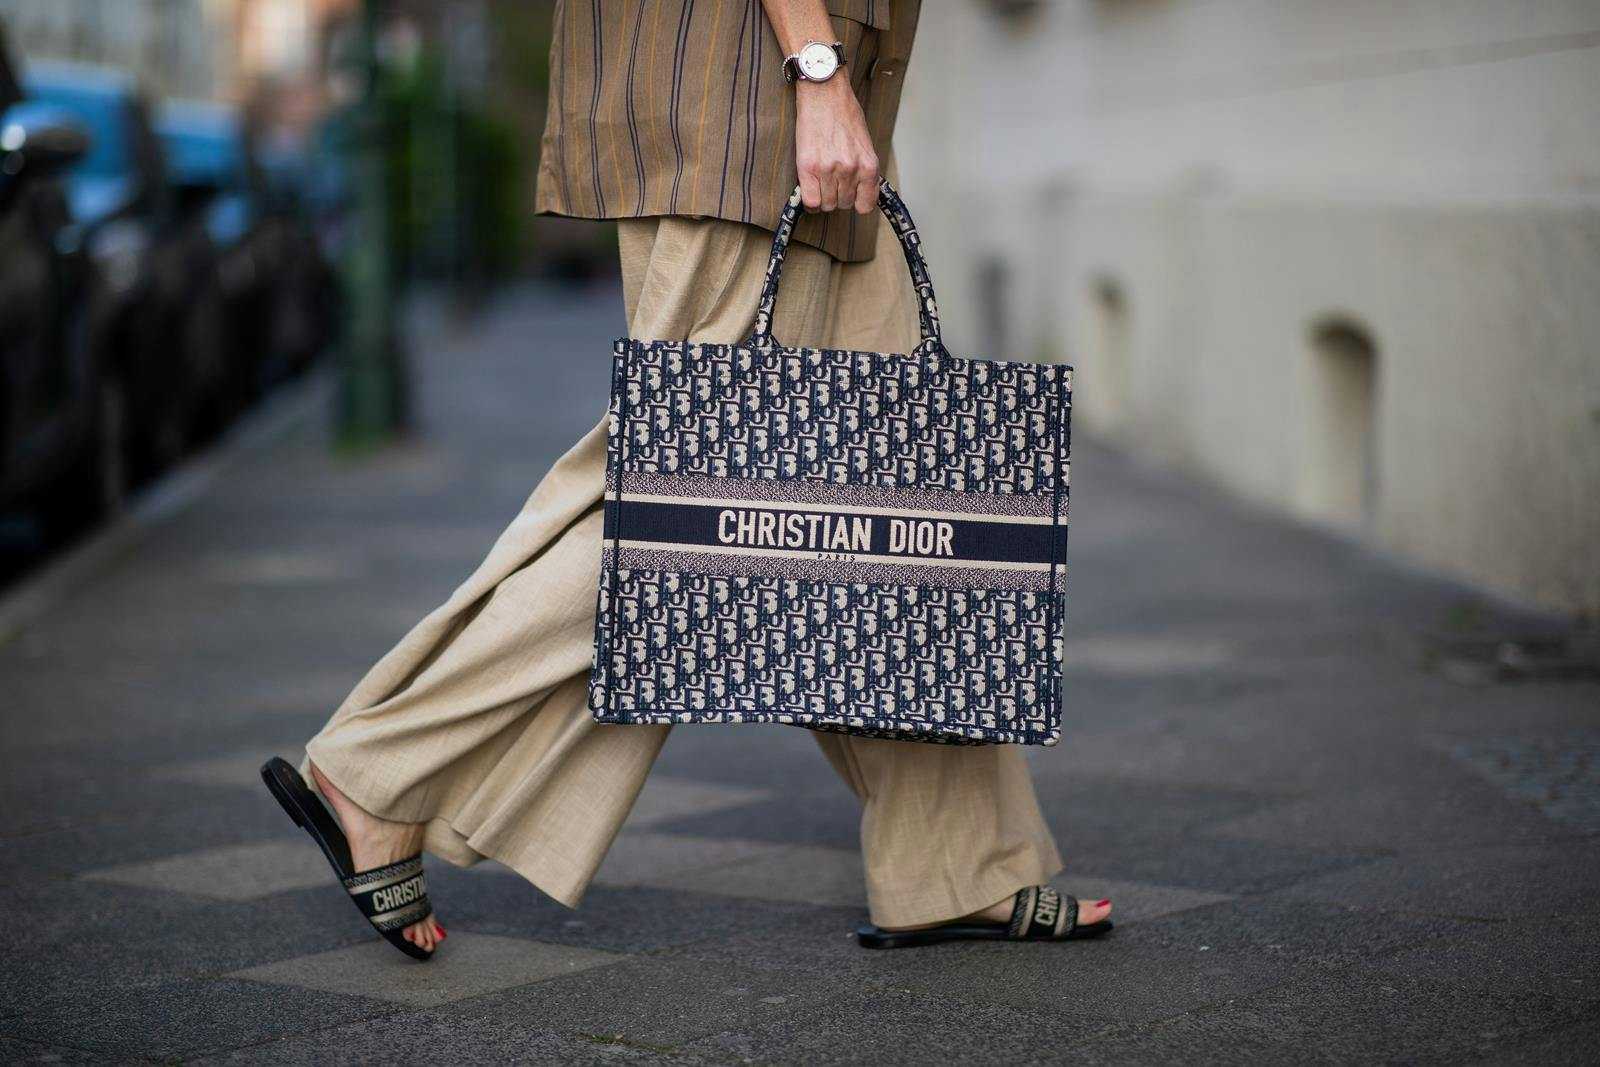 Christian Dior luxury big bag.